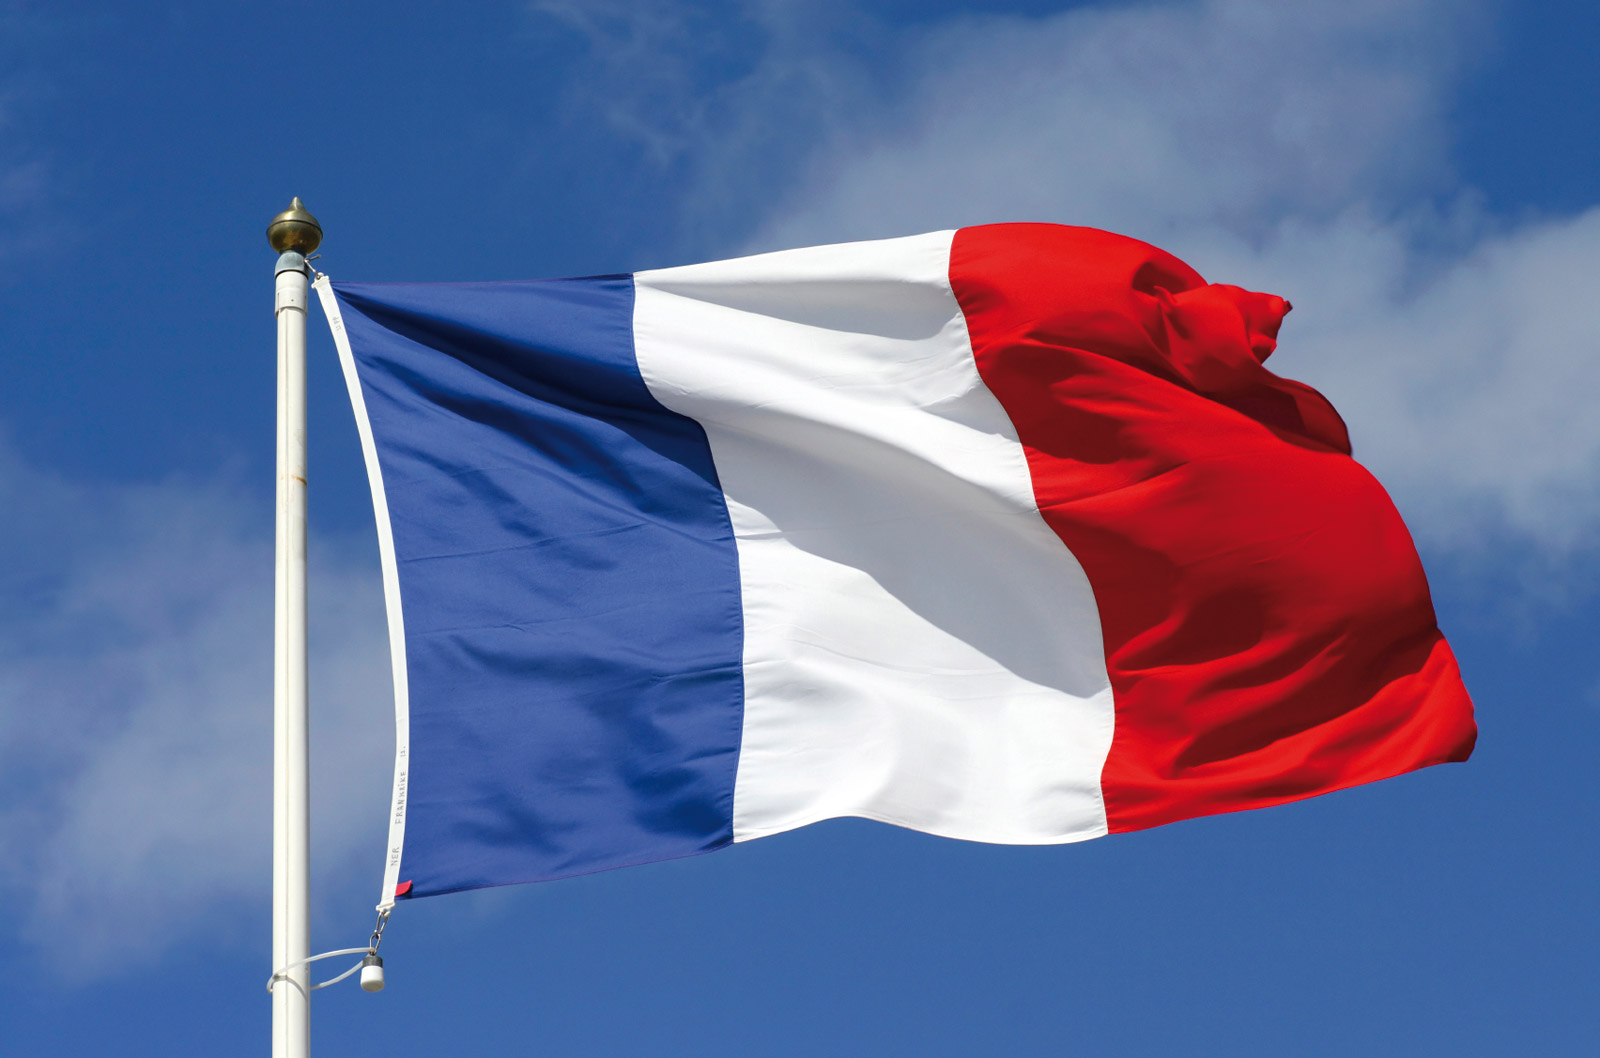 فرنسا ستعمم استخدام لغتها مكان الإنجليزية داخل مؤسسات الاتحاد الأوروبي عام ٢٠٢٢